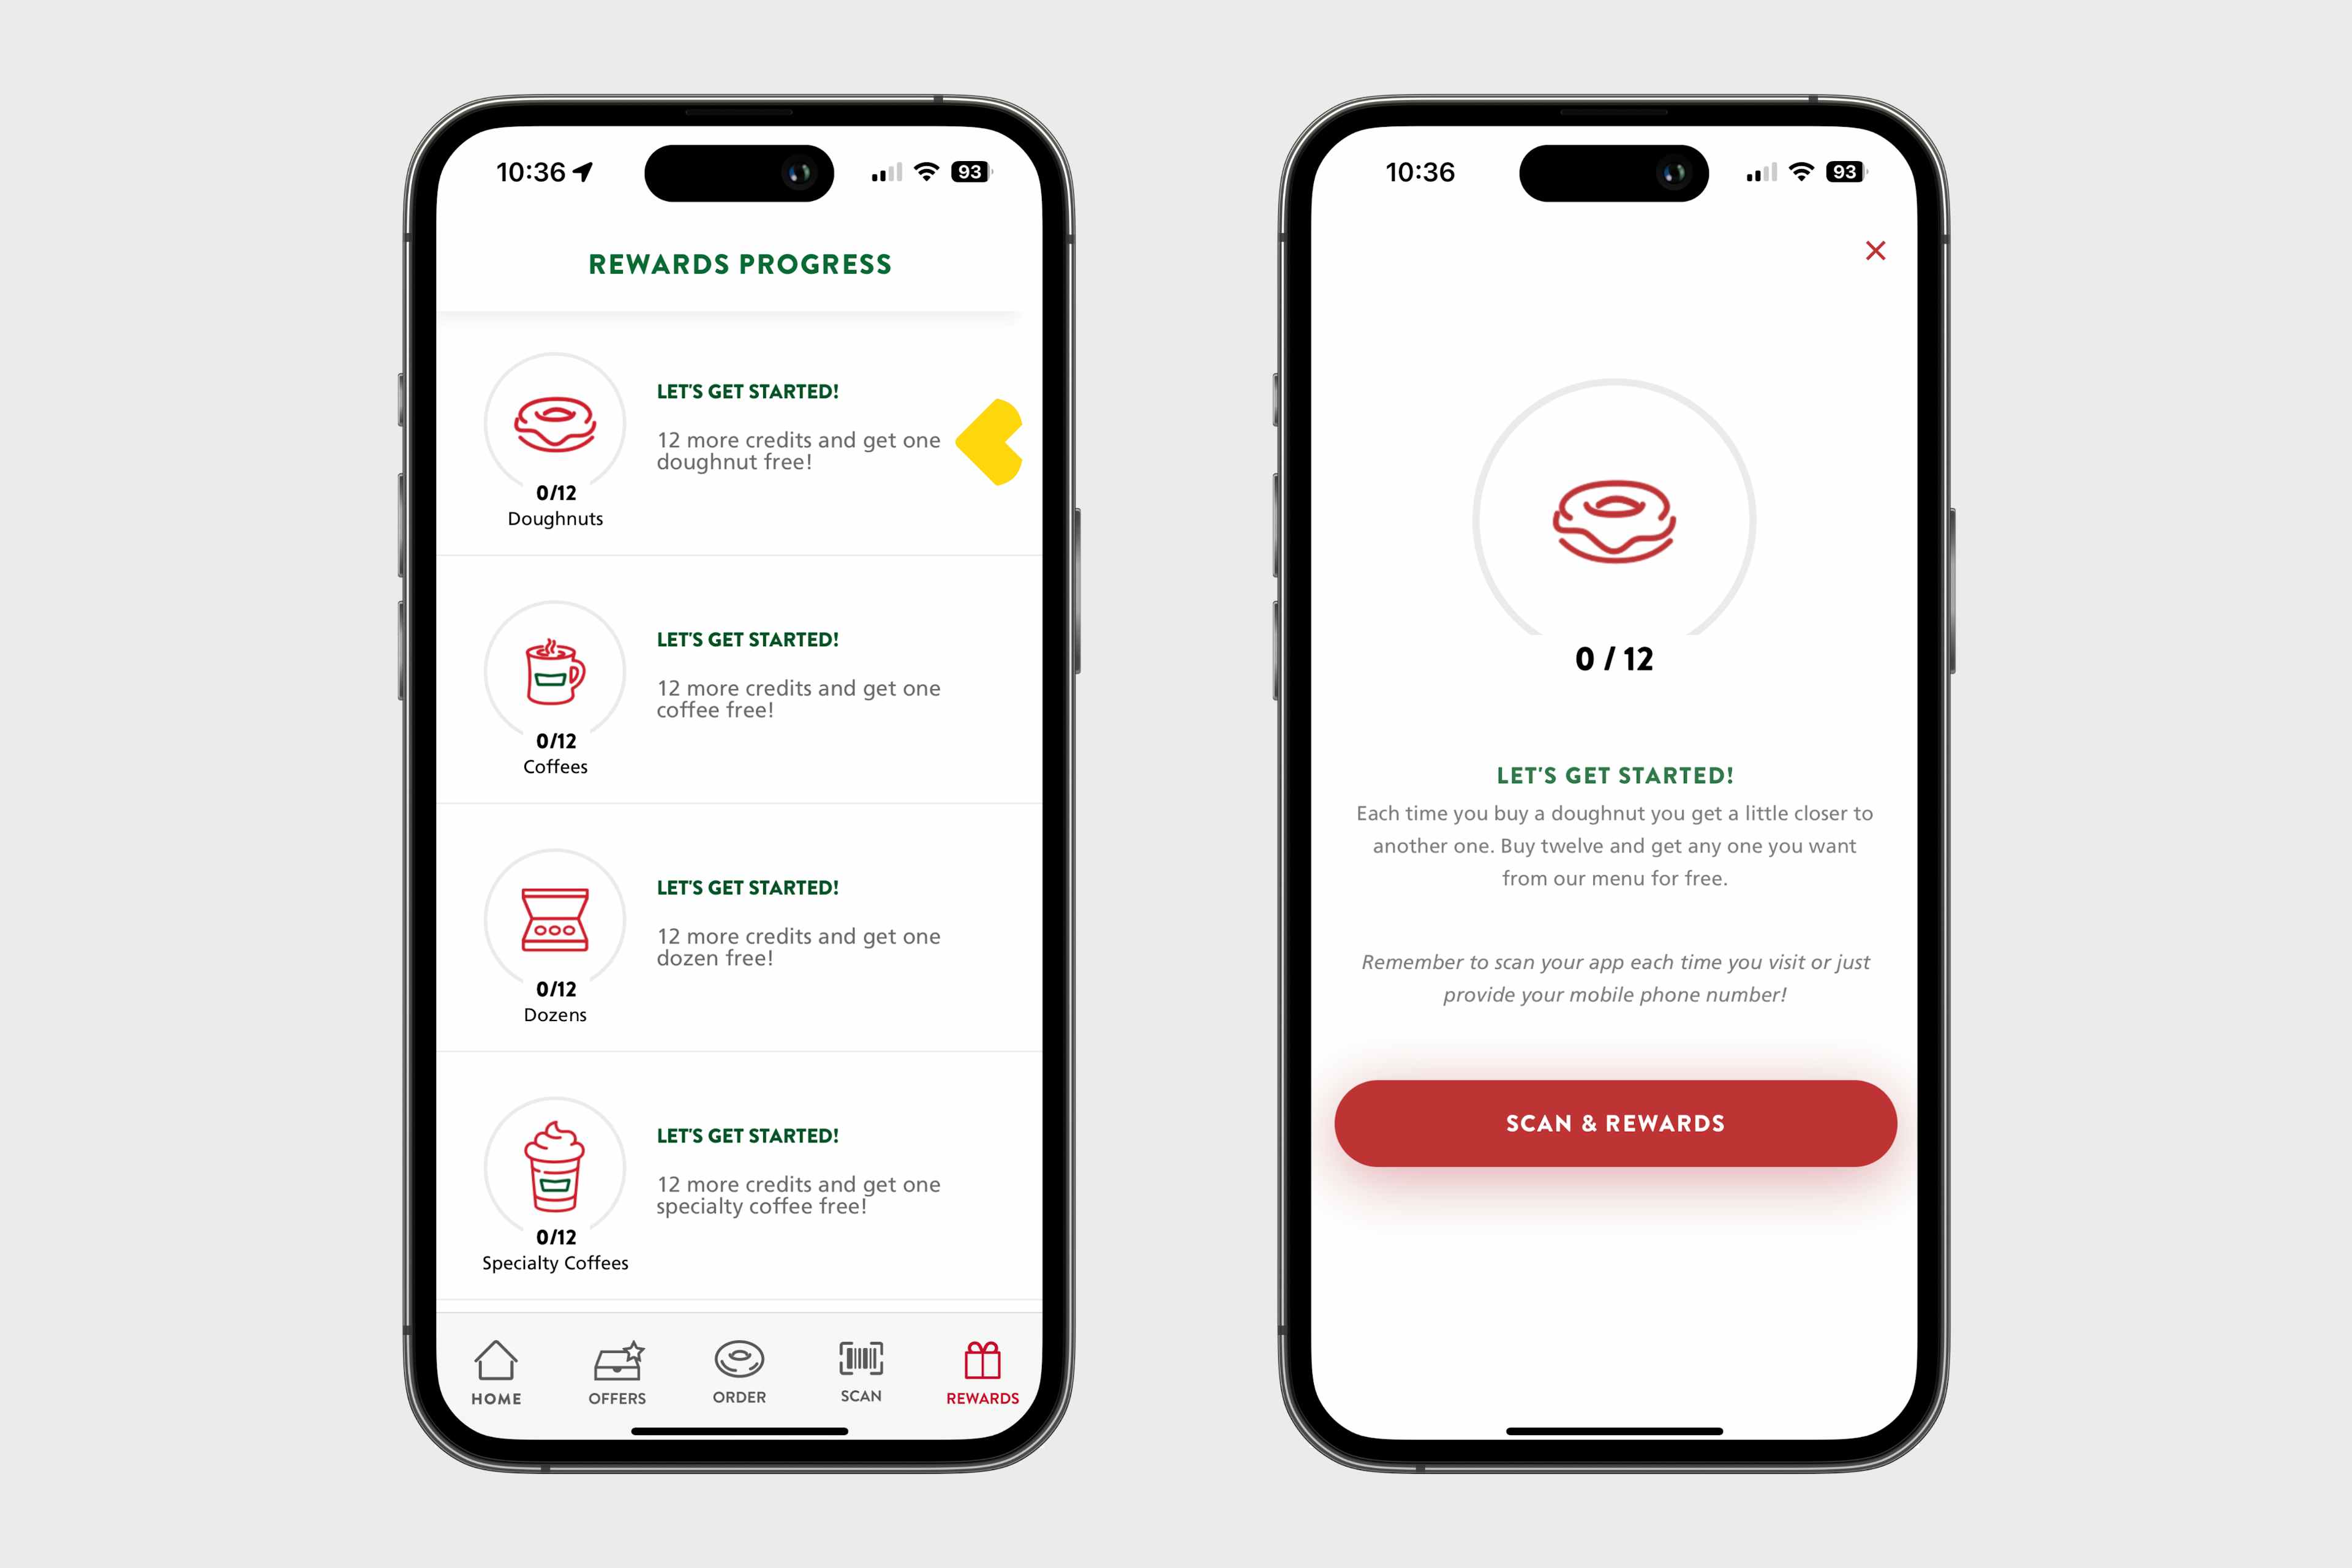 two phones showing krispy kreme reward offers on their app